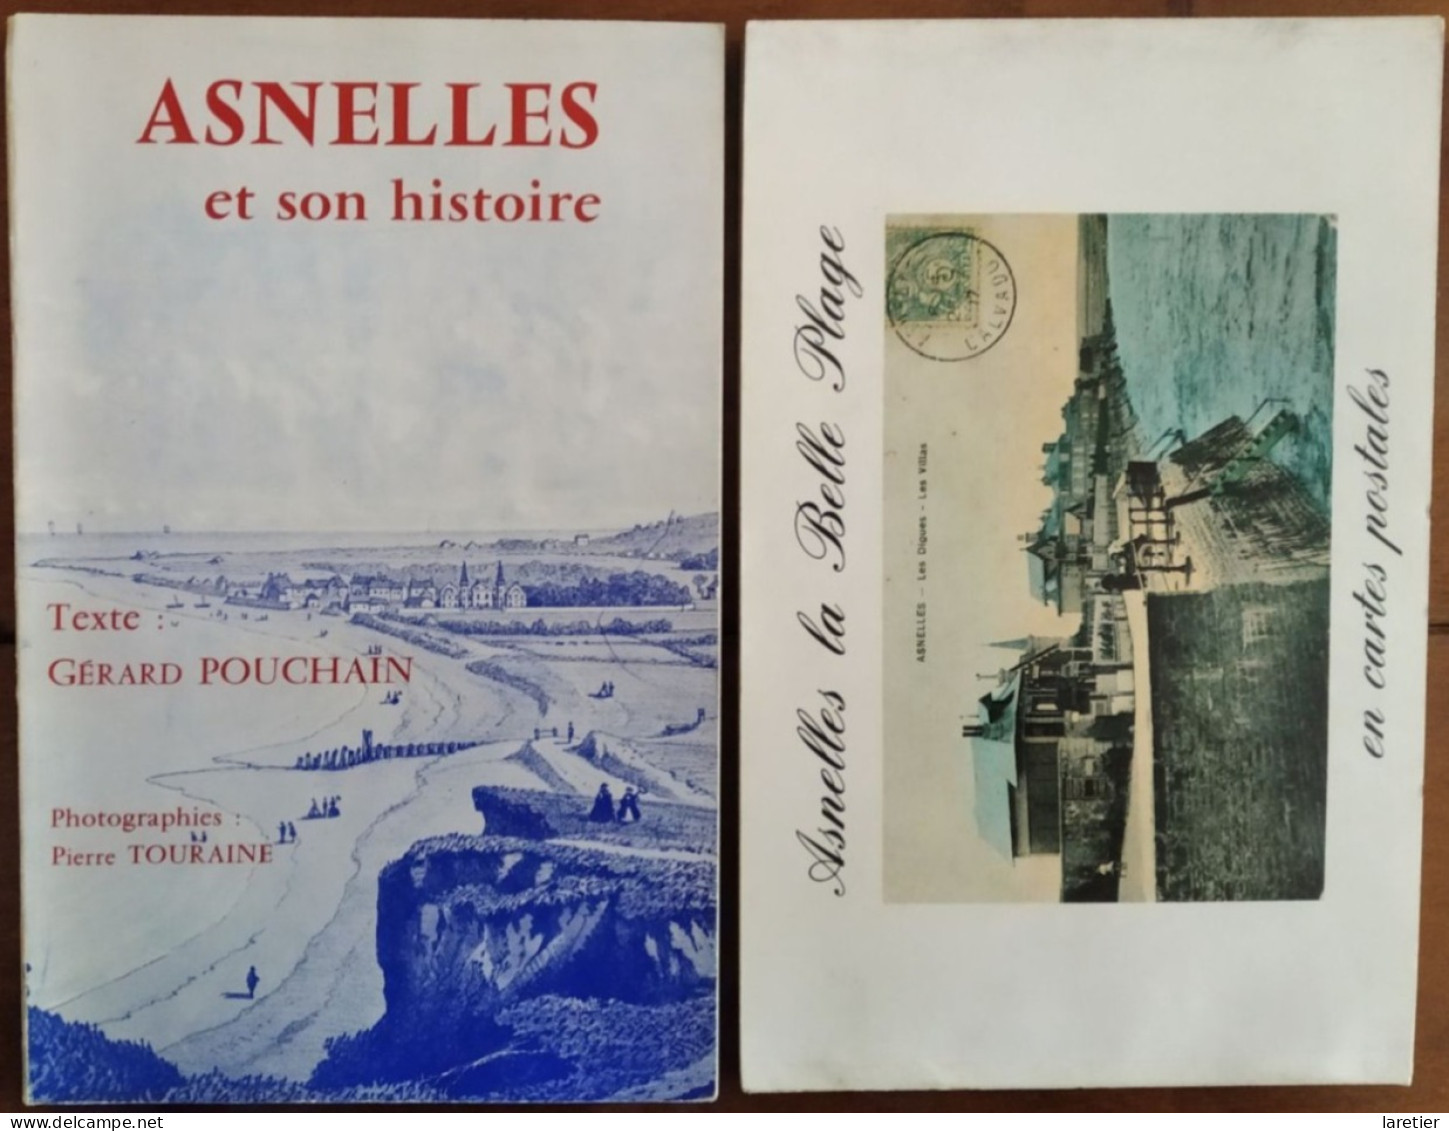 ASNELLES et son histoire - Texte : Gérard Pouchain - Photographies : Pierre Touraine - Calvados (14) - Normandie